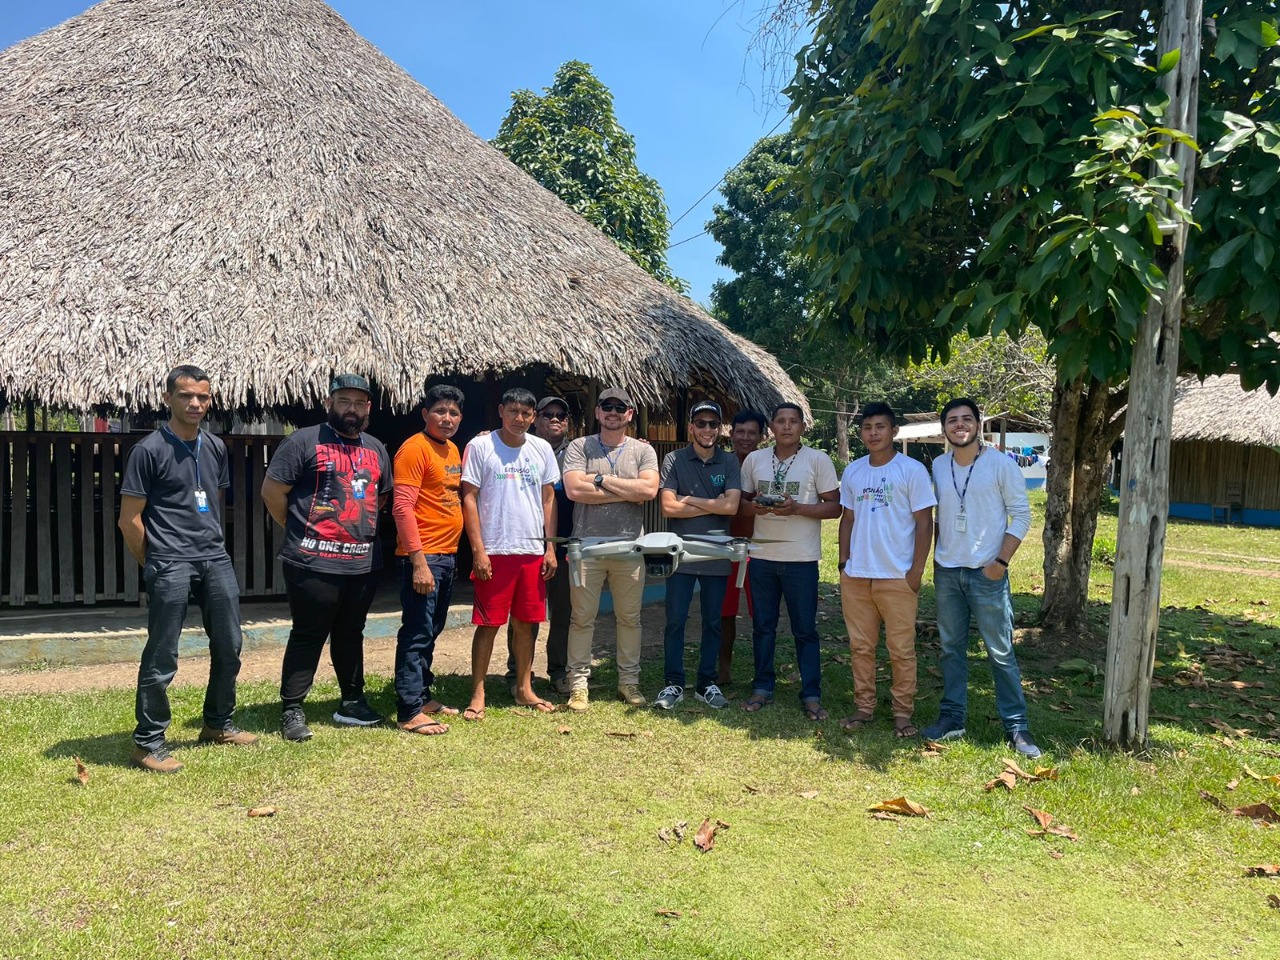  Imagem colorida mostra 11 homens e um drone pairando no ar, entre eles há  servidores do TJRR e indígenas da comunidade Waimiri-Atroari, os mesmos estão em pé posando para a foto em frente a um malocão.